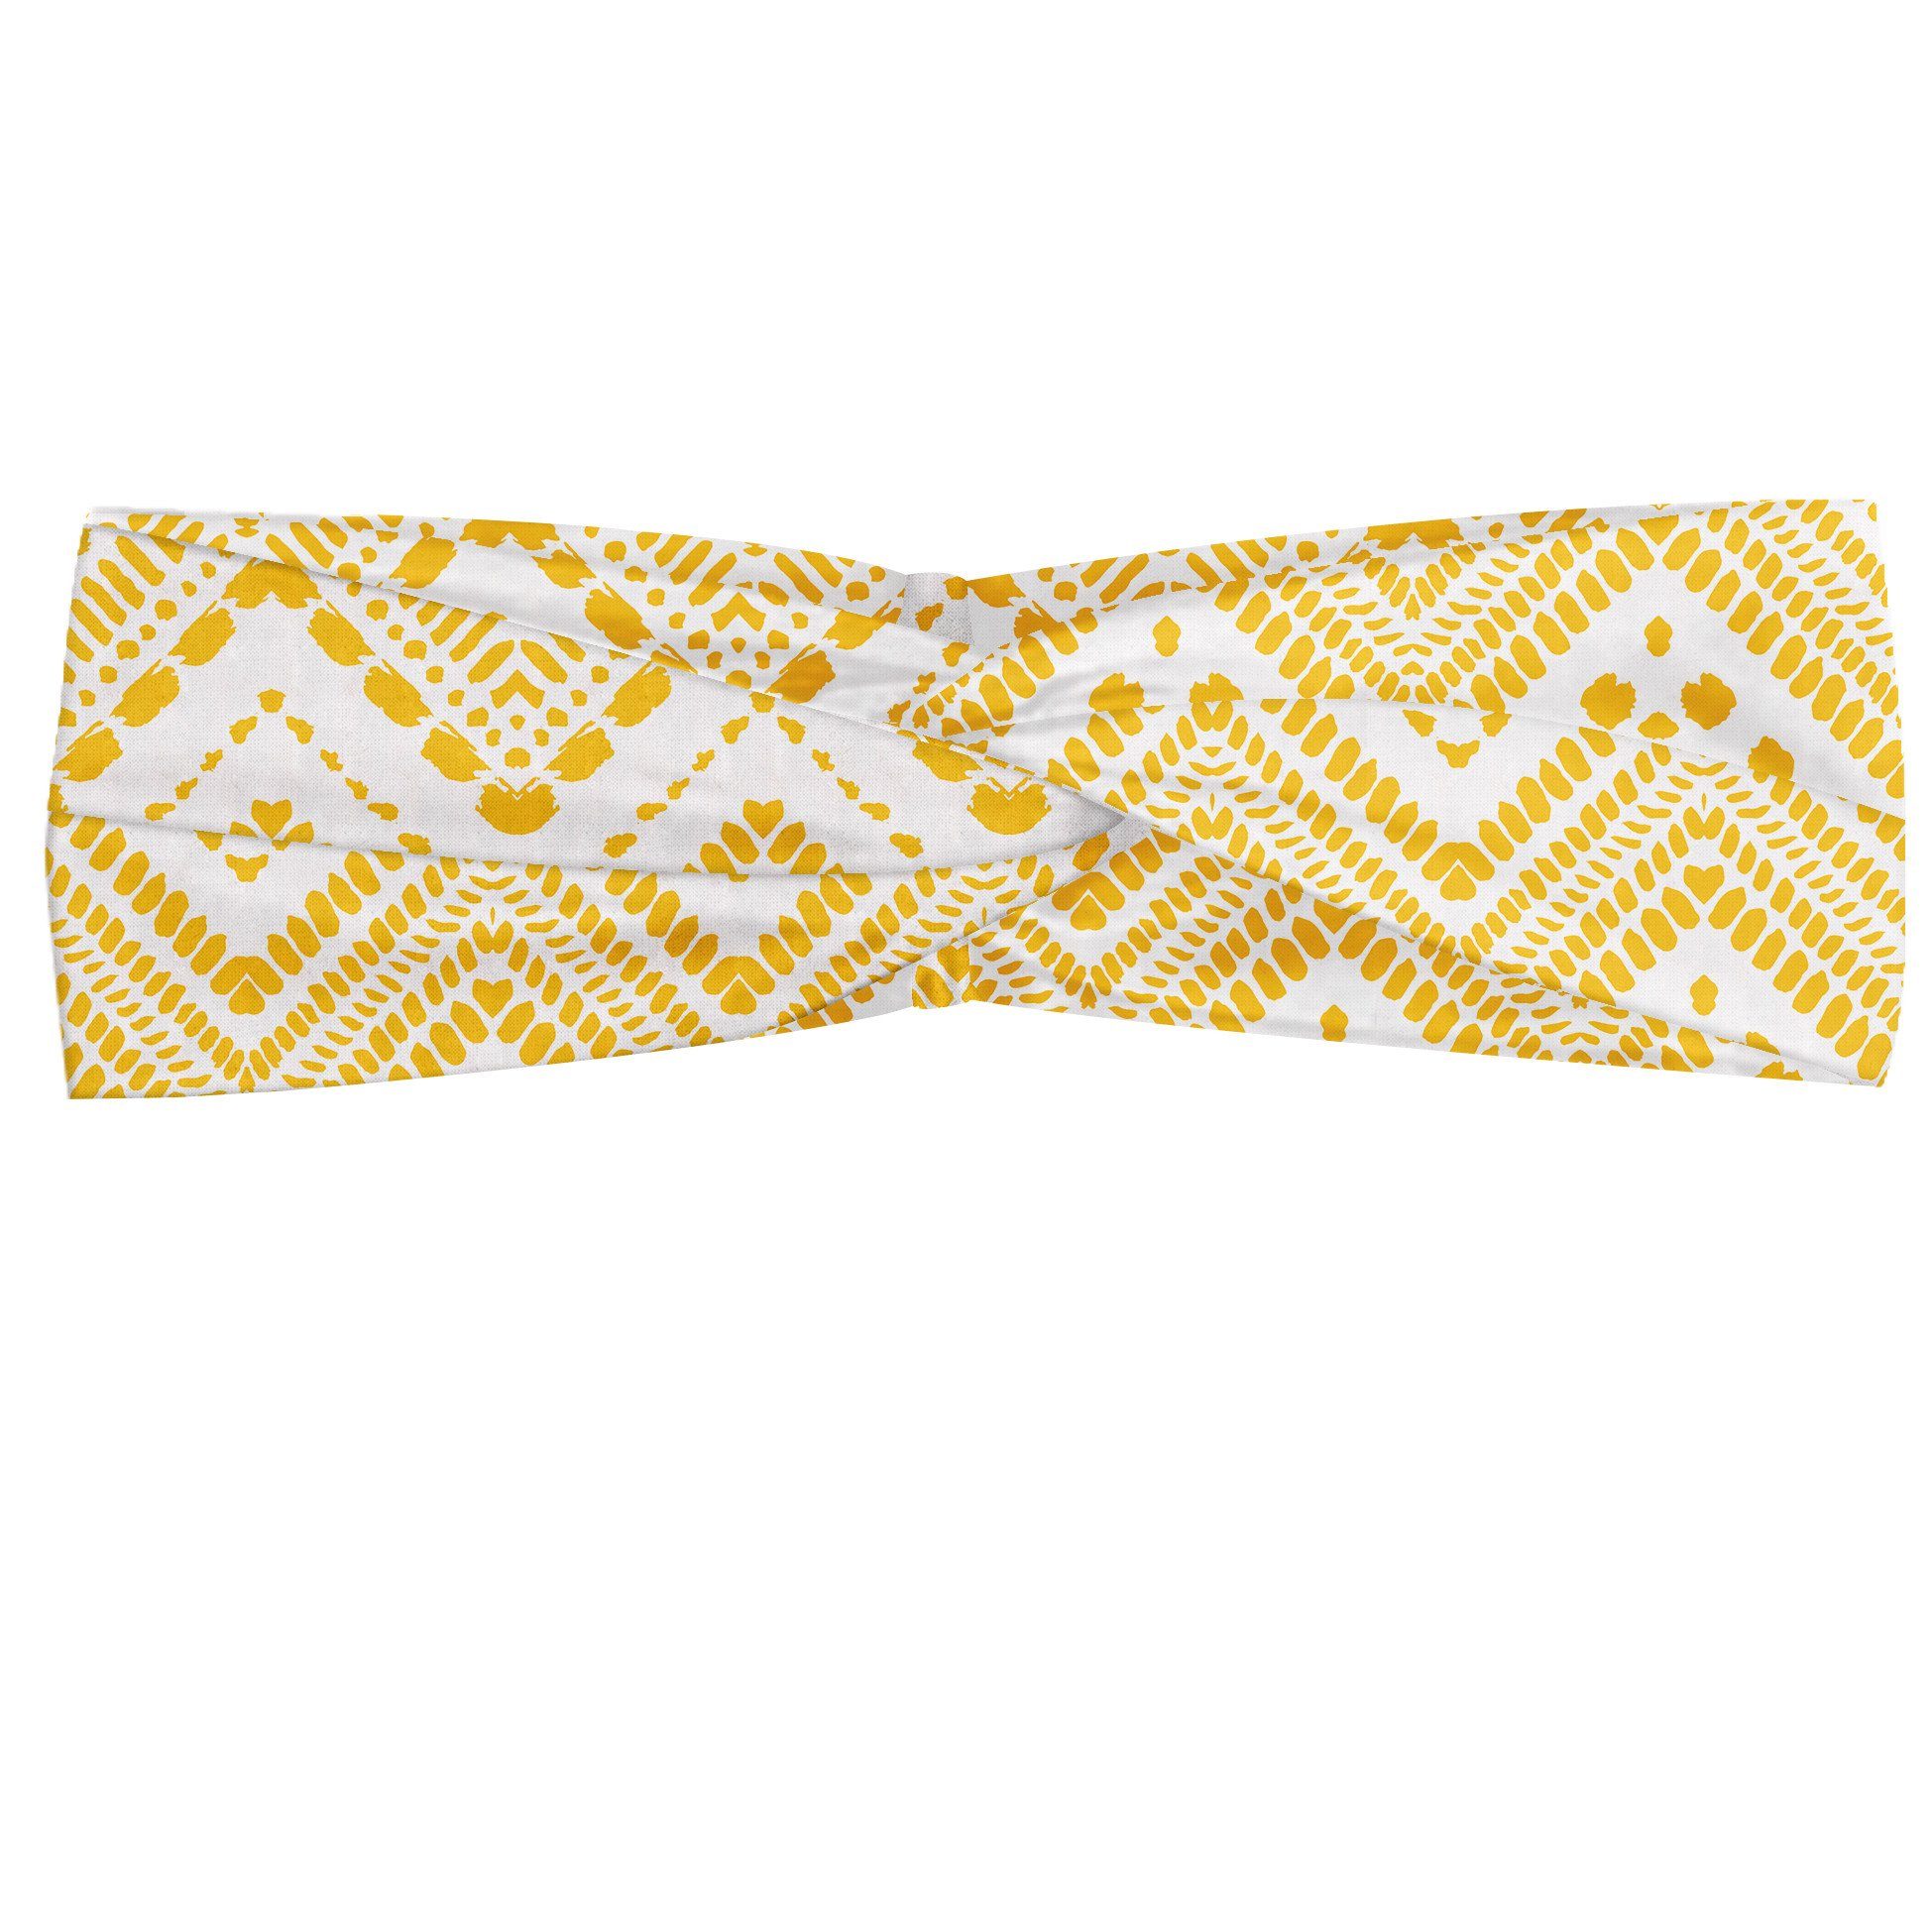 Abakuhaus Stirnband Elastisch und Angenehme alltags accessories Yellow Chevron Aztec Muster